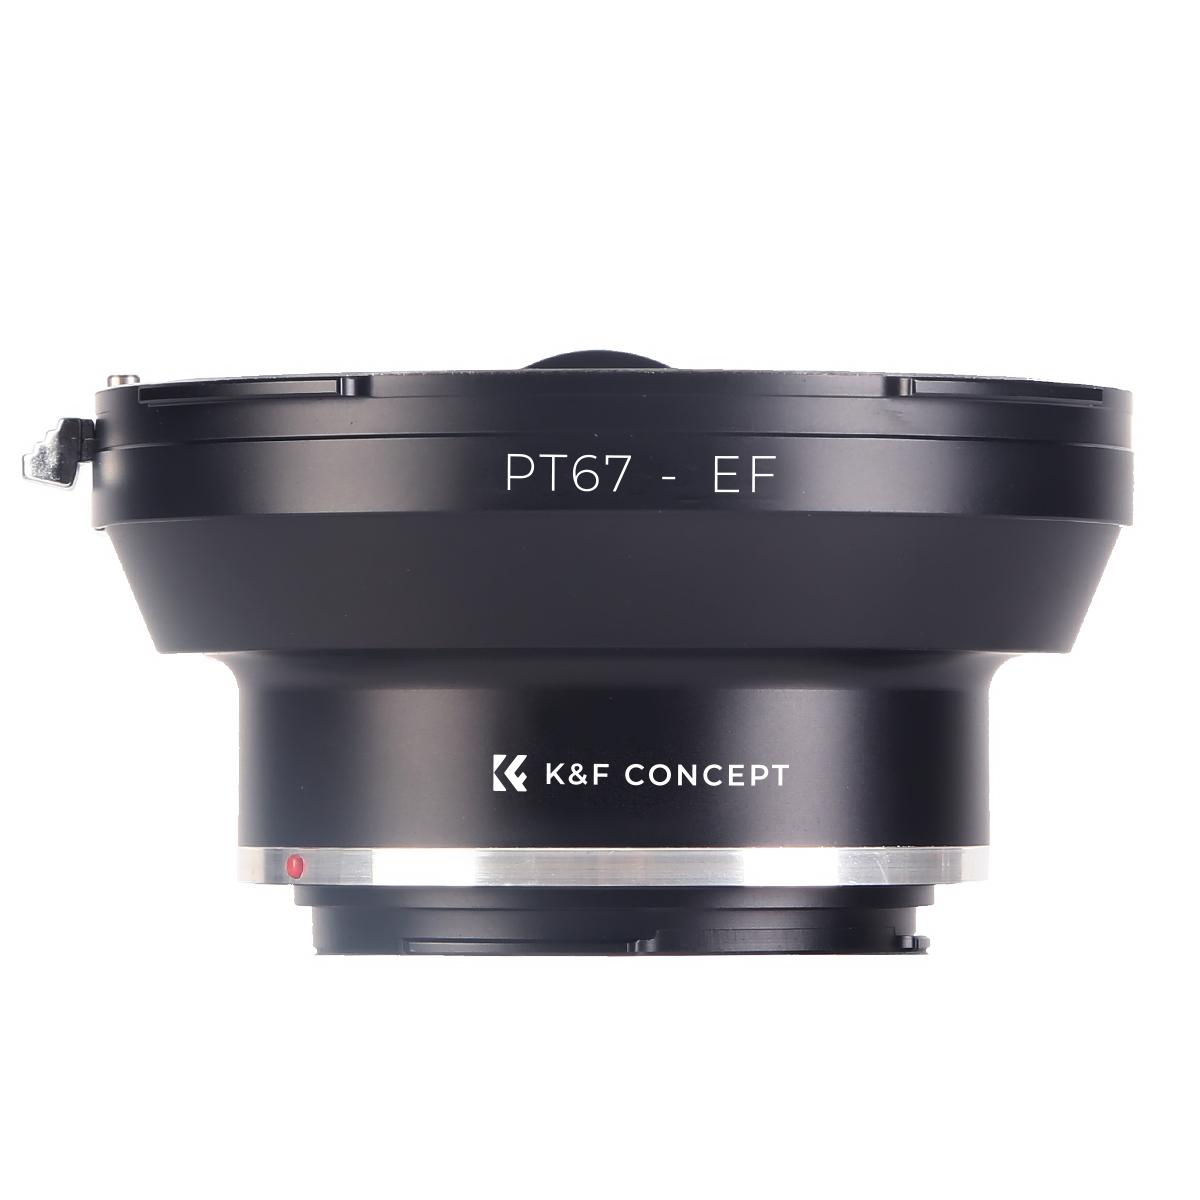 P6 Urth x Gobe Adattatore di montaggio lente: compatibile con lente Pentacon lente Six e corpo fotocamera Canon EF & EF-S 